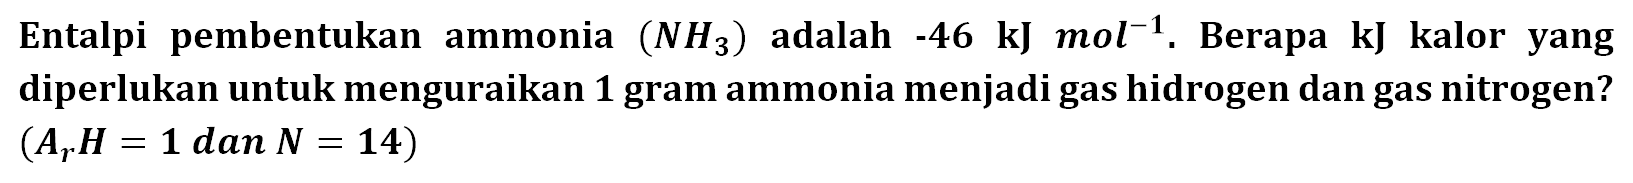 Entalpi pembentukan ammonia (NH3) adalah -46 kJ mol^-1. Berapa kJ kalor yang diperlukan untuk menguraikan 1 gram ammonia menjadi gas hidrogen dan gas nitrogen? (Ar H = 1 dan N = 14) 